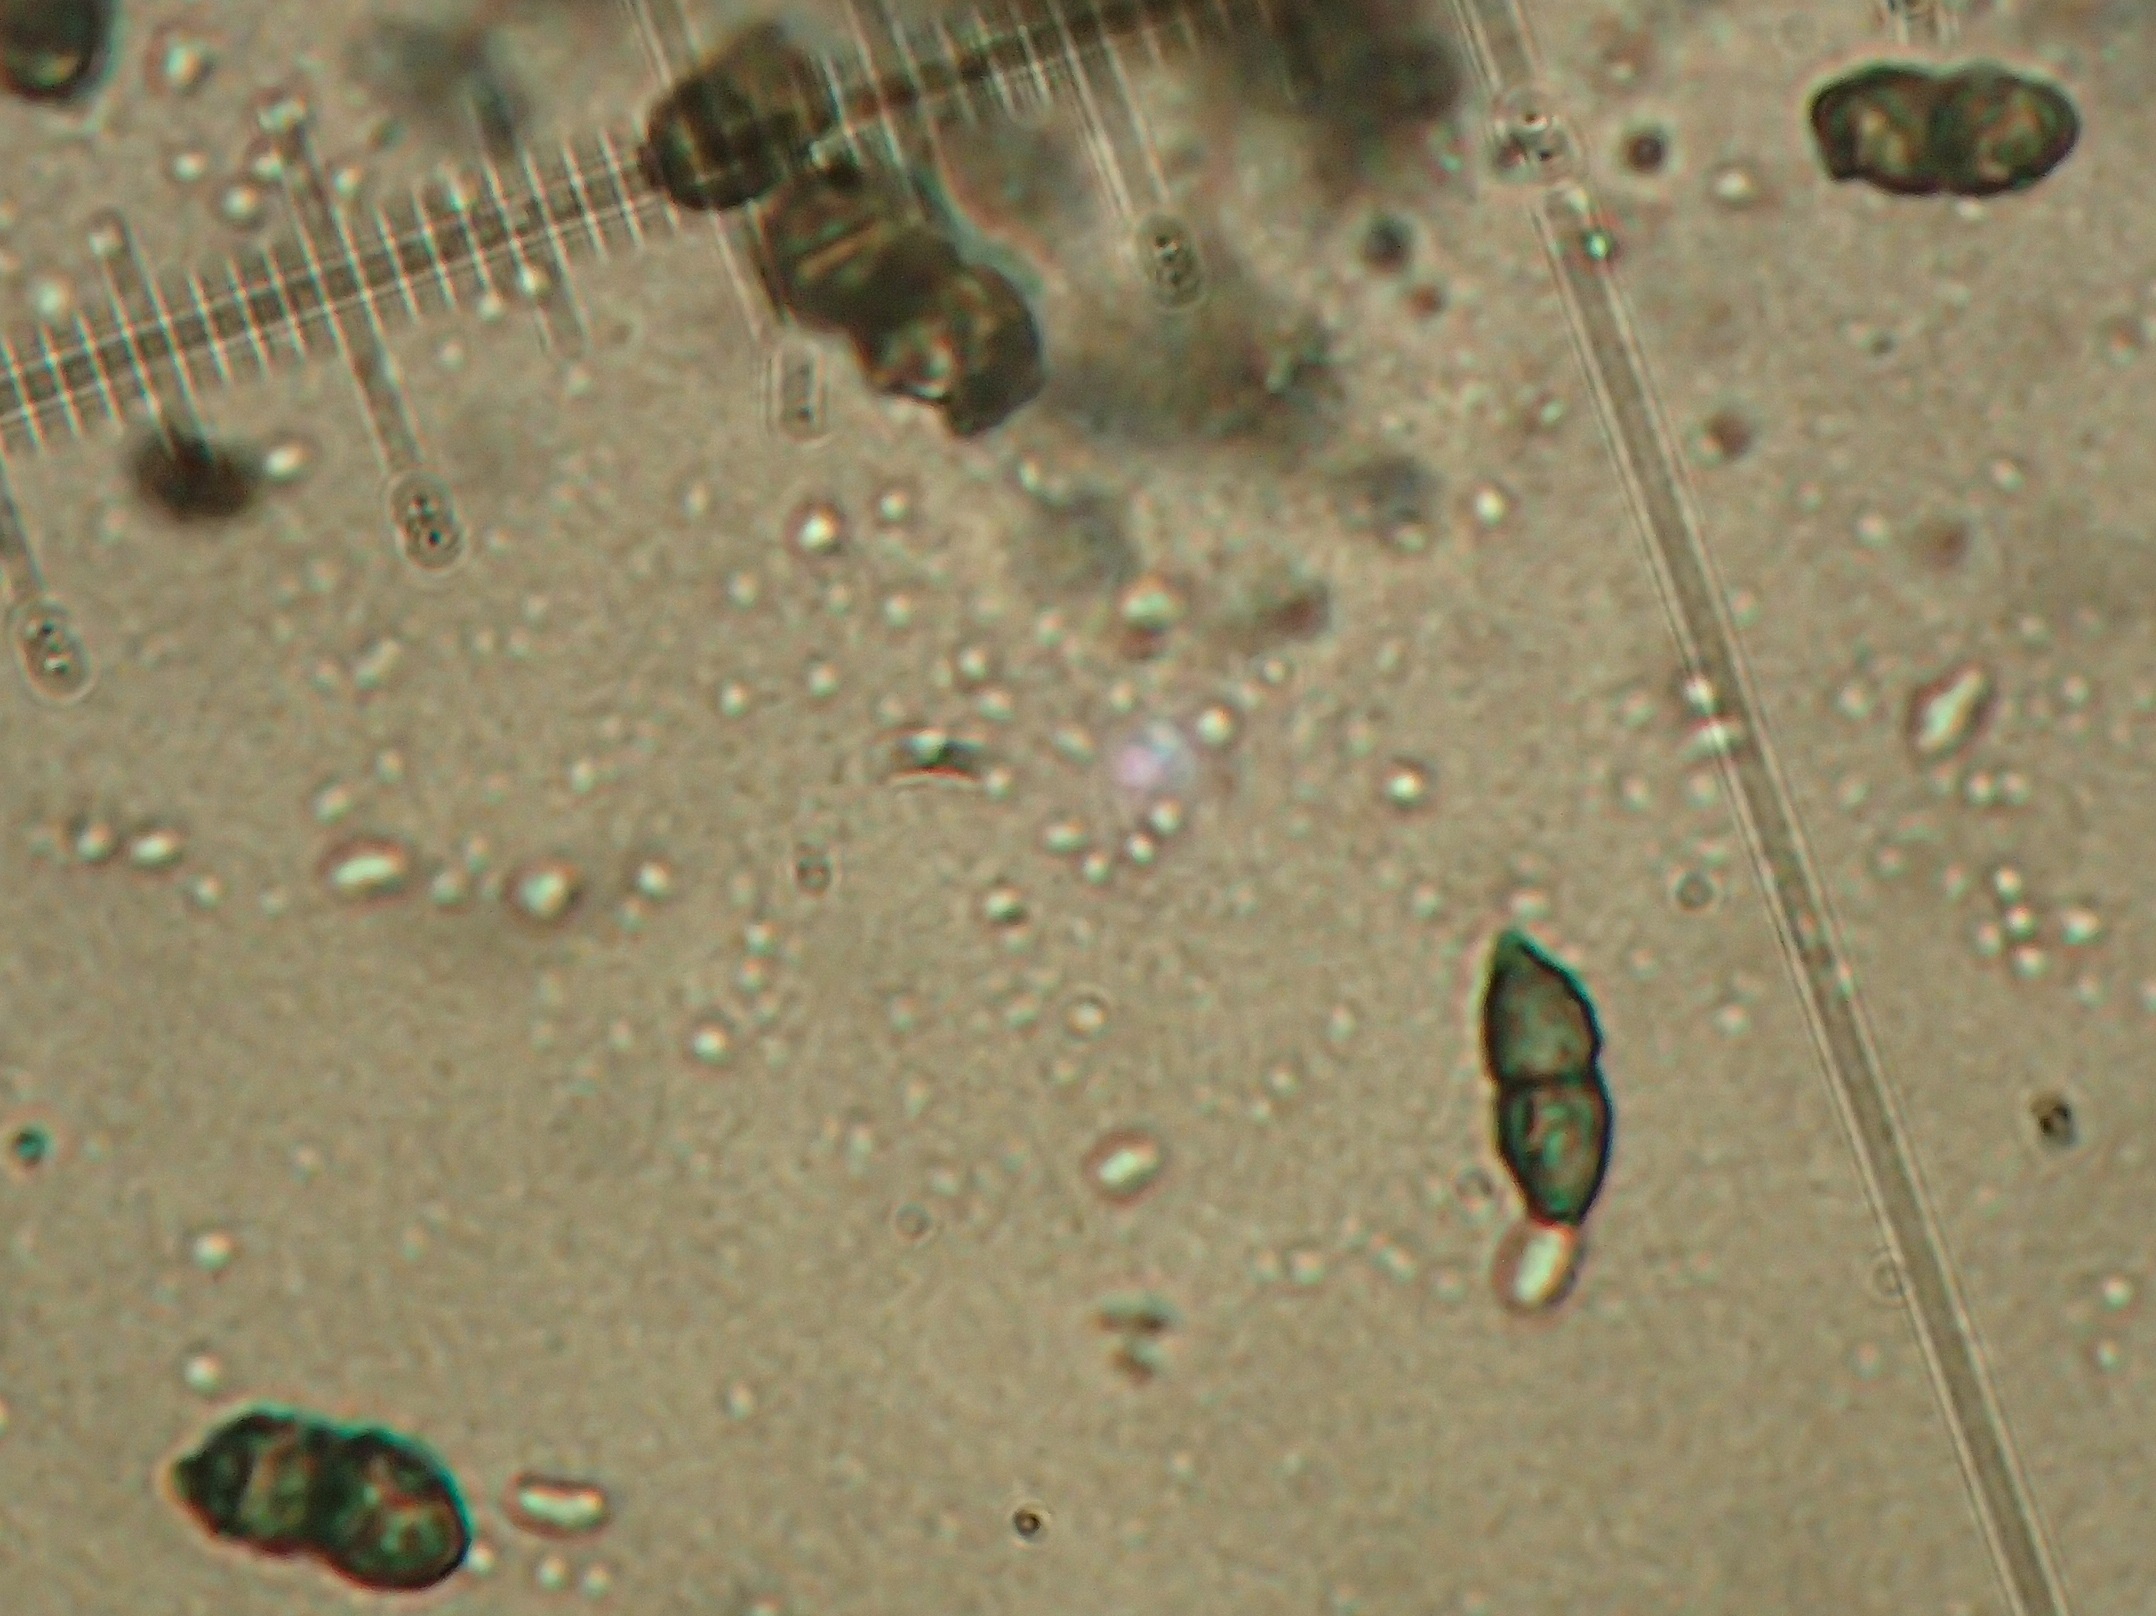 Calicium viride: 1-septate spores